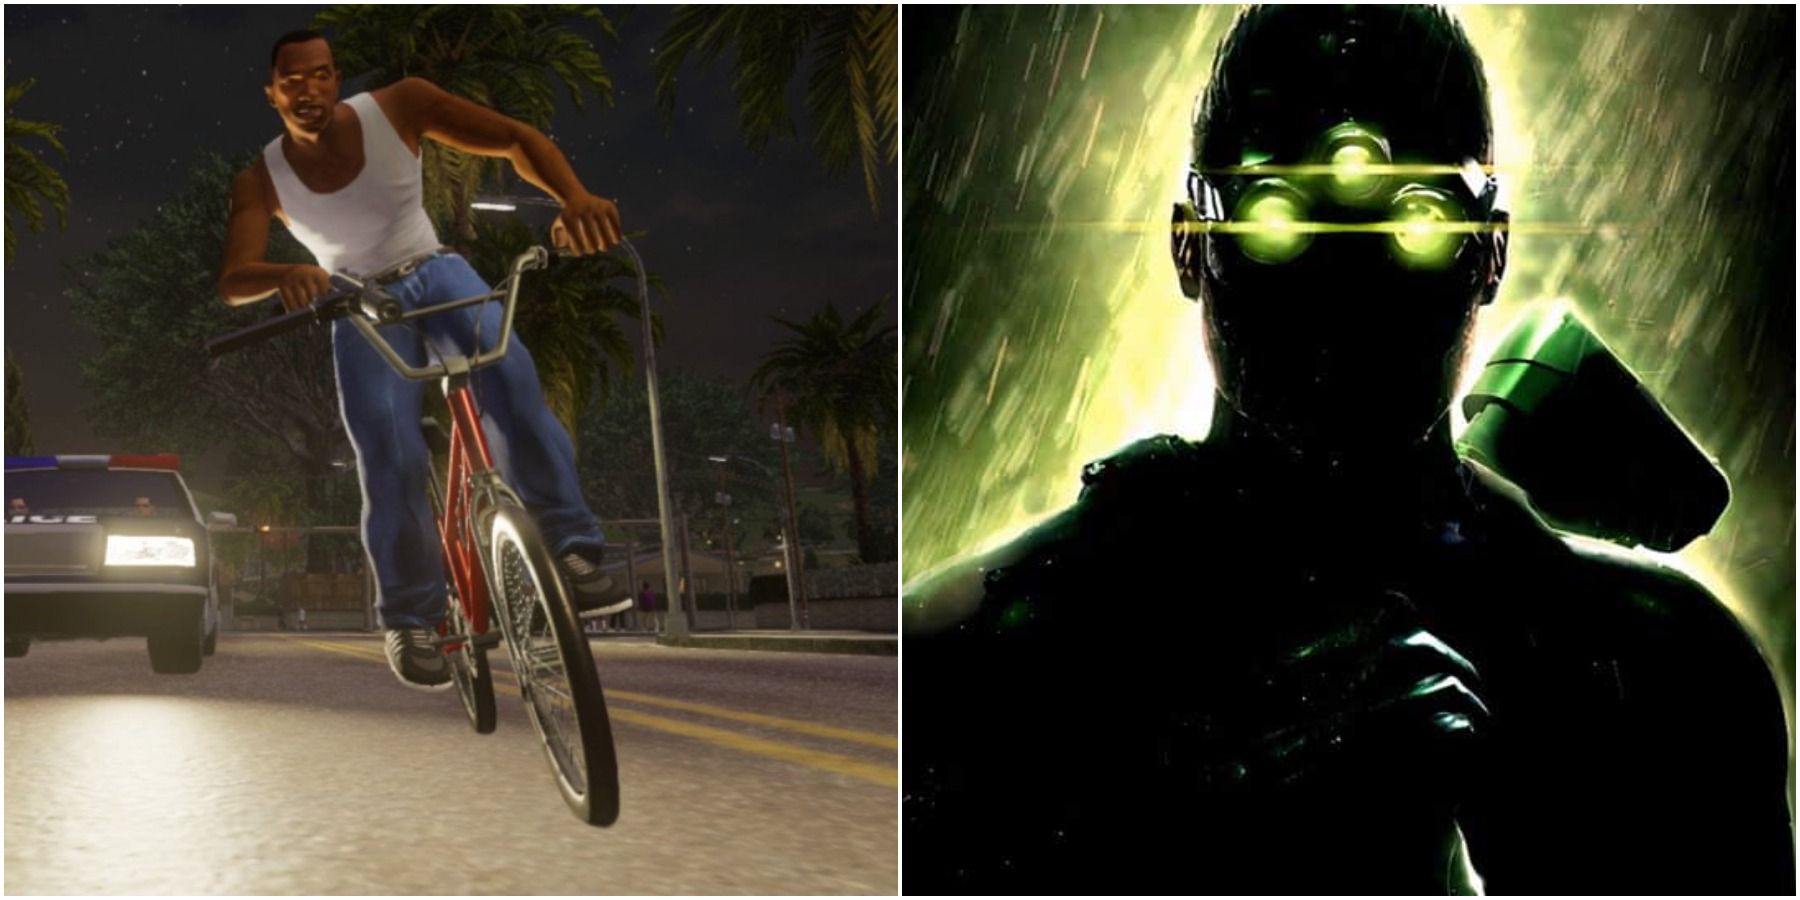 (Слева) Карл на велосипеде (справа) Сэм Фишер из Splinter Cell